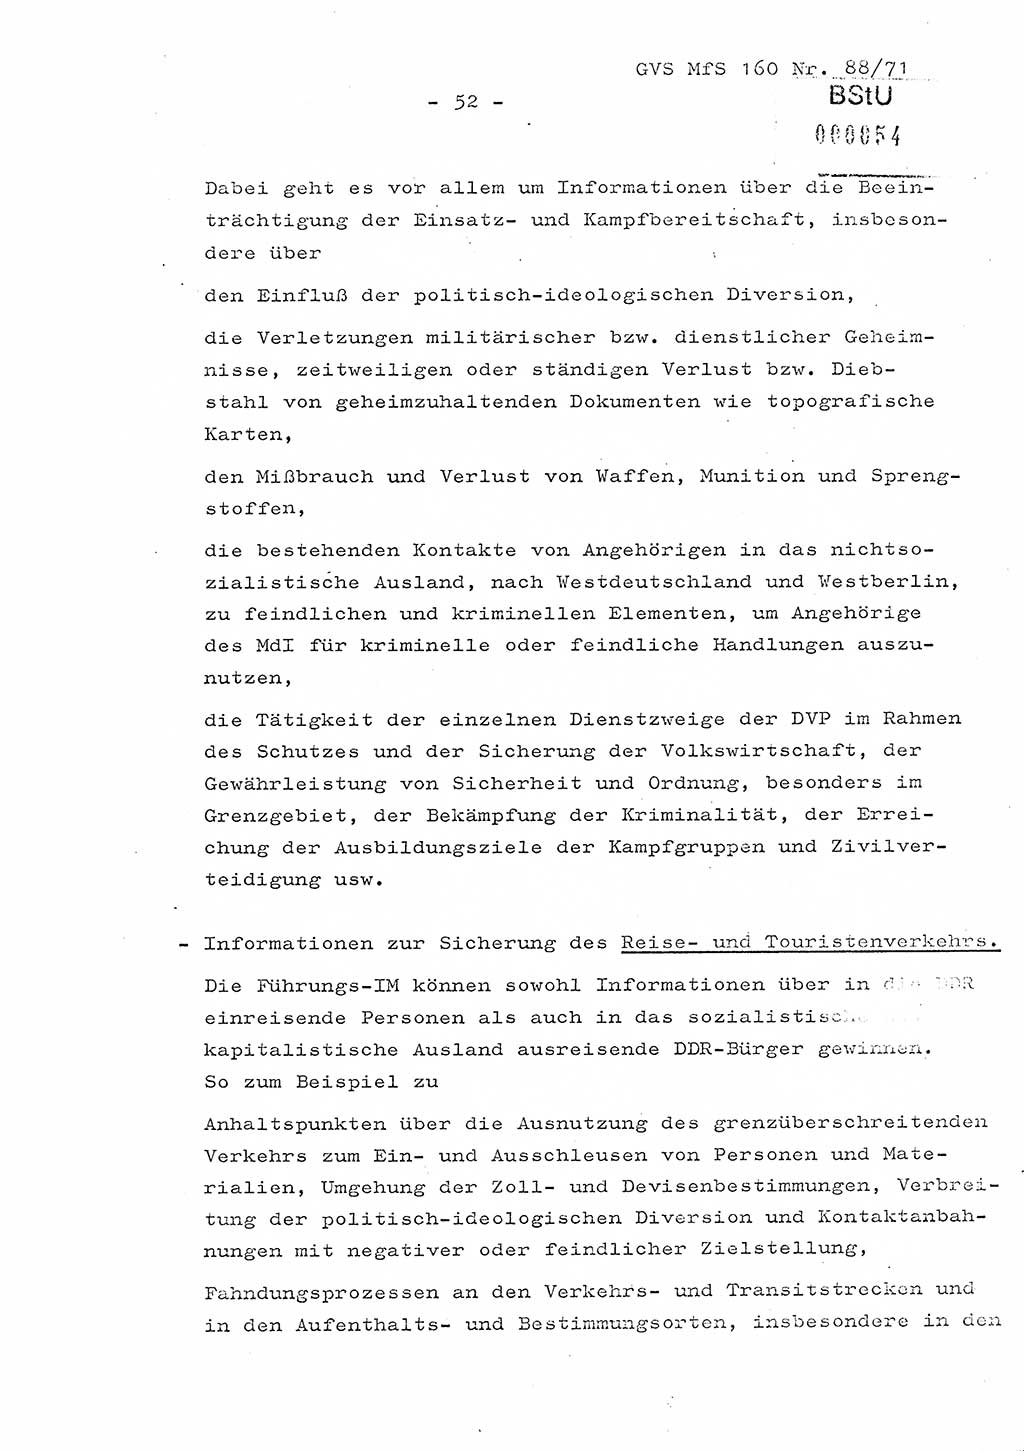 Dissertation Oberstleutnant Josef Schwarz (BV Schwerin), Major Fritz Amm (JHS), Hauptmann Peter Gräßler (JHS), Ministerium für Staatssicherheit (MfS) [Deutsche Demokratische Republik (DDR)], Juristische Hochschule (JHS), Geheime Verschlußsache (GVS) 160-88/71, Potsdam 1972, Seite 52 (Diss. MfS DDR JHS GVS 160-88/71 1972, S. 52)